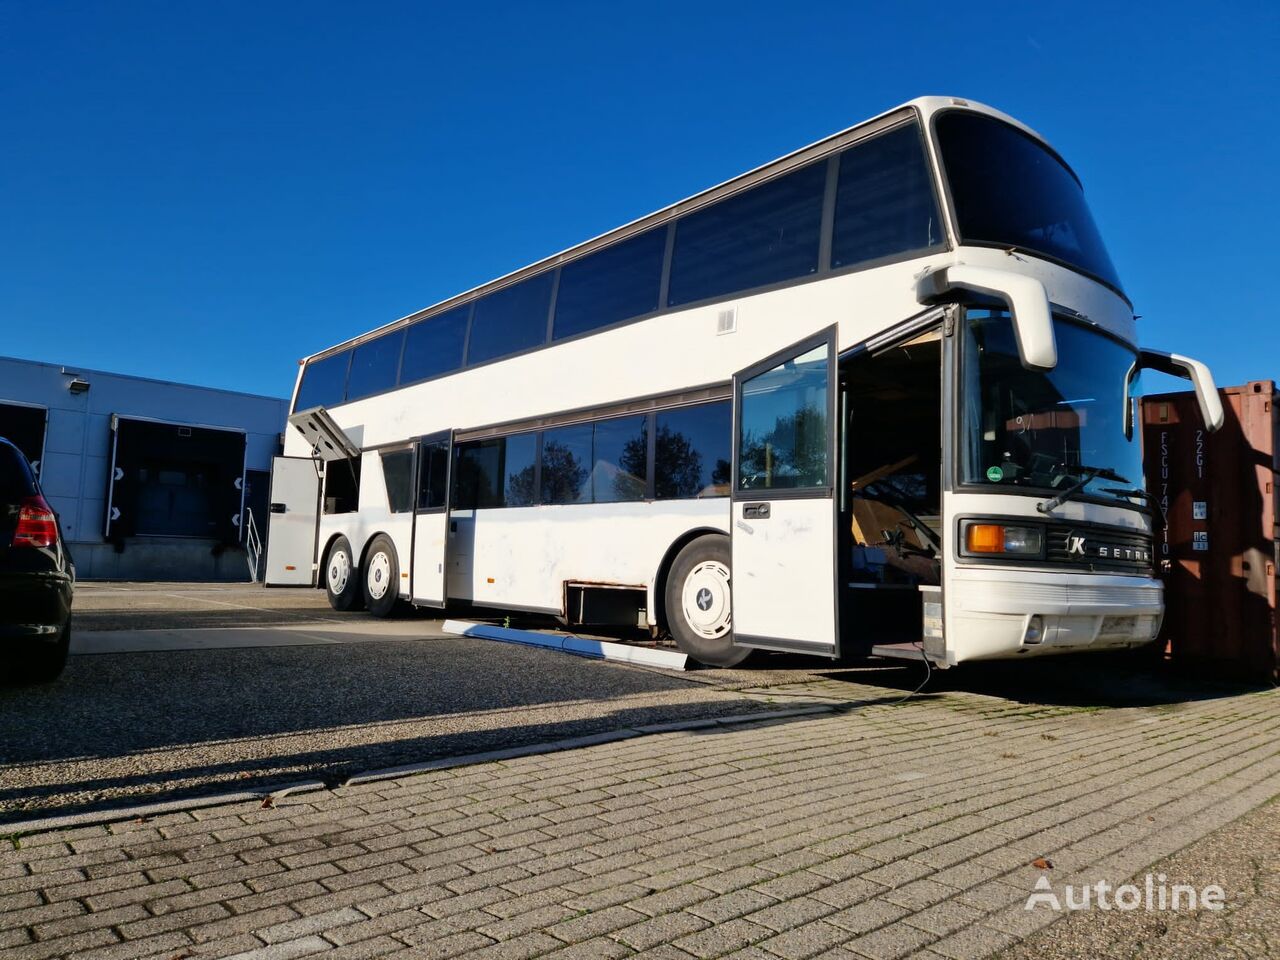 الحافلة ذات الطابقين Setra S228 DT Dubbeldekker voor ombouw tot camper / woonbus